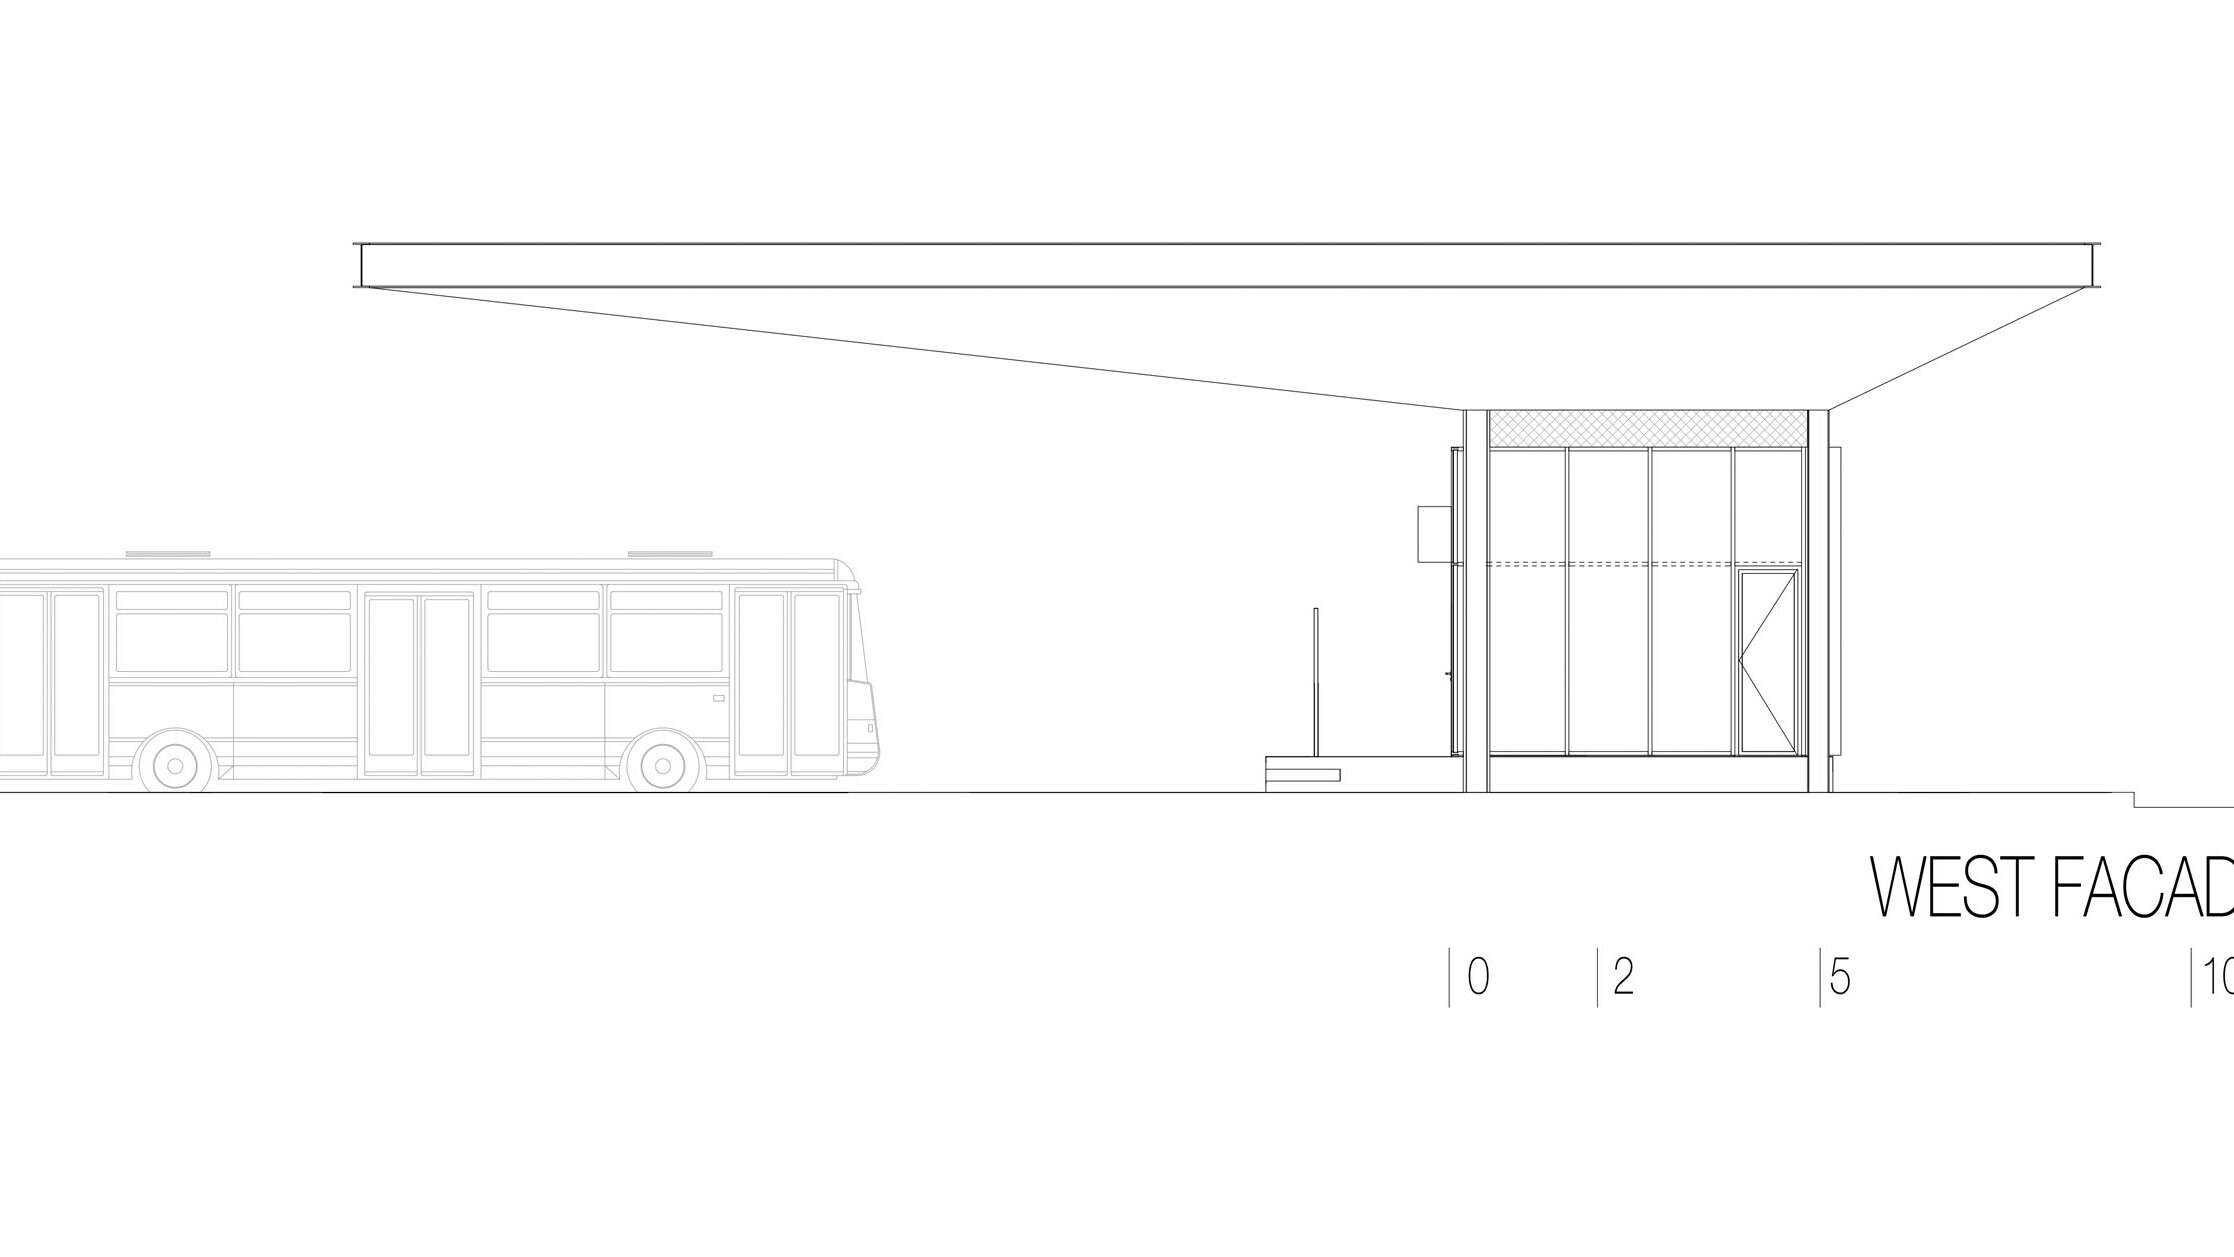 Kresba zobrazuje západný pohľad na autobusovú zastávku "Autobusni Kolodvor Slavonski Brod" v Chorvátsku. Na ilustrácii je zdôraznená dlhá horizontálna biela strecha PREFA Prefalz, ktorá vyčnieva nad priestor pod ňou. V pravej časti kresby je obdĺžniková budova s veľkými sklenenými plochami a jasnými líniami. Vľavo je autobus, ktorý zdôrazňuje proporcie zastávky vo vzťahu k vozidlu. Západný pohľad zdôrazňuje modernú a funkčnú architektúru autobusovej zastávky, ktorá vďaka kombinácii skla a hliníka vytvára svetlú a príjemnú atmosféru.